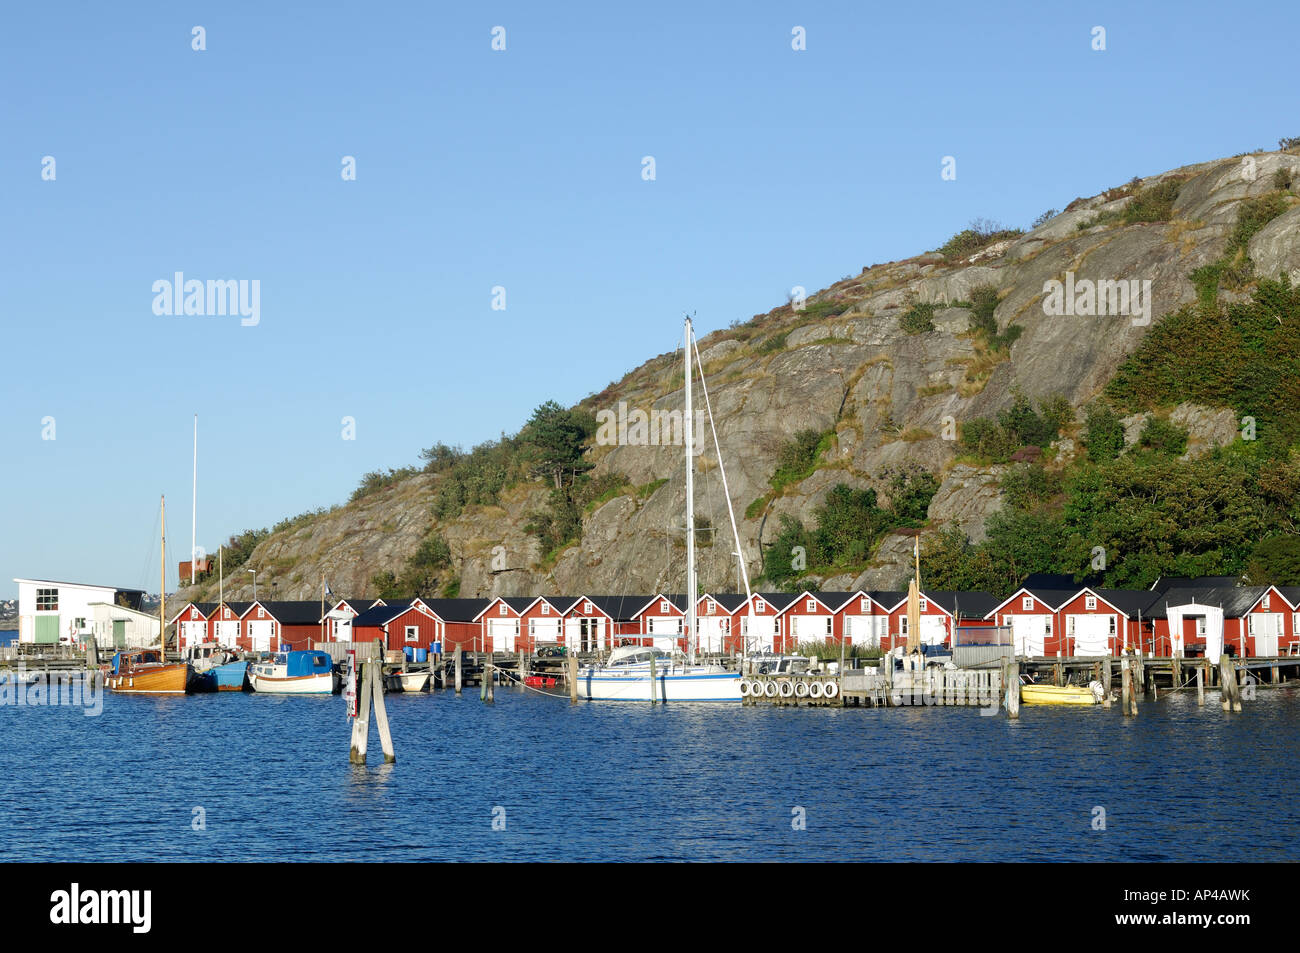 Beach huts and boats in sea, Asperö, Göteborgs Södra skärgård, Sweden Stock Photo